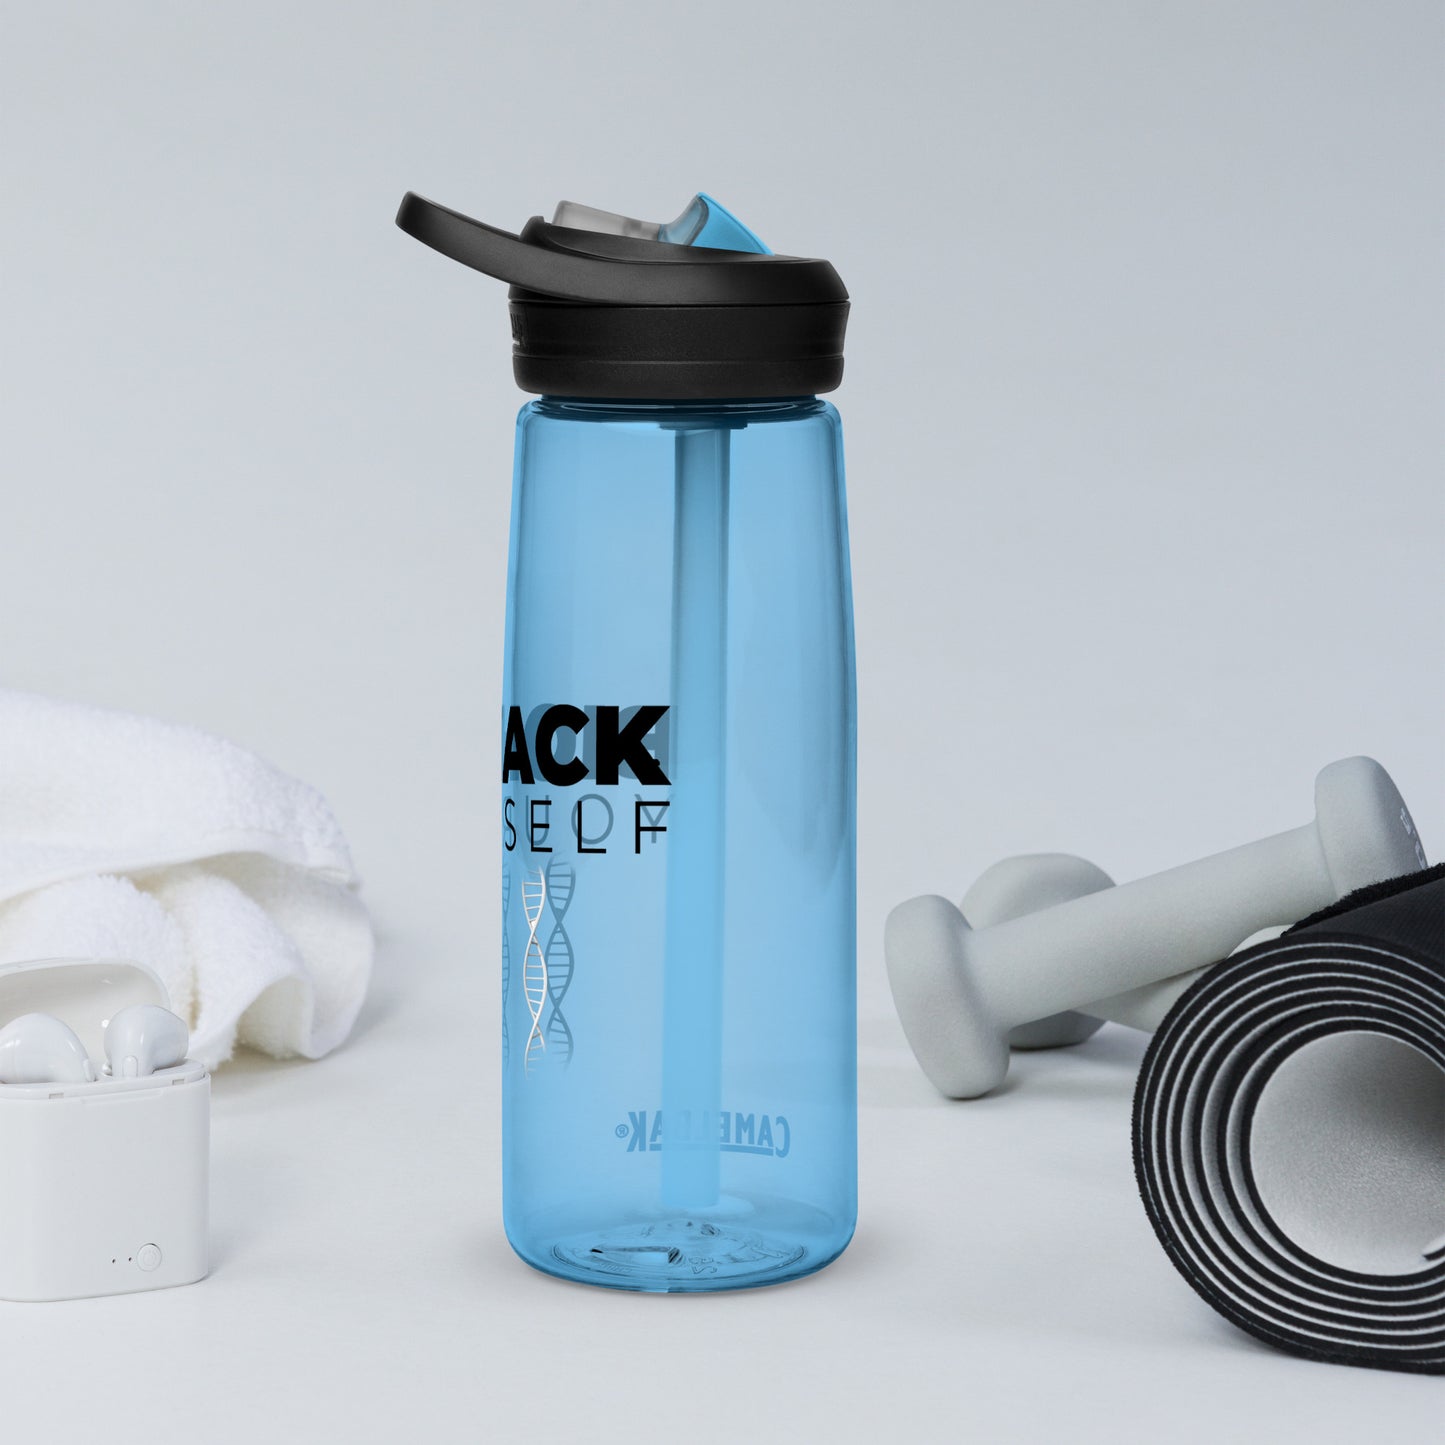 Biohack Yourself Sports water bottle